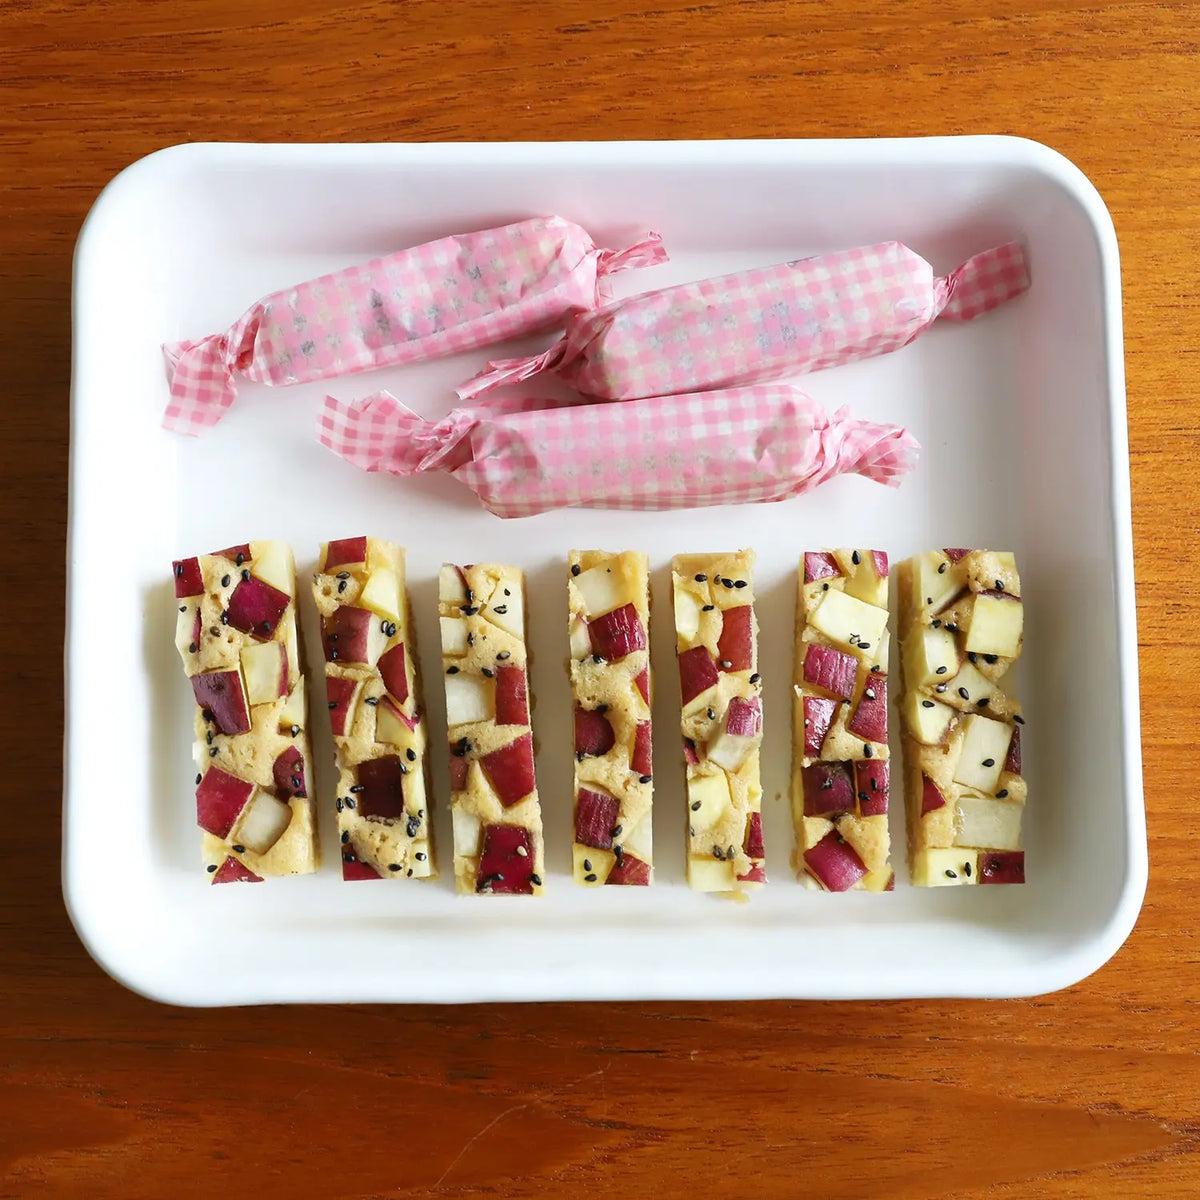 Noda Horo White Series Enamel Nestable Meal Prep Baking Tray